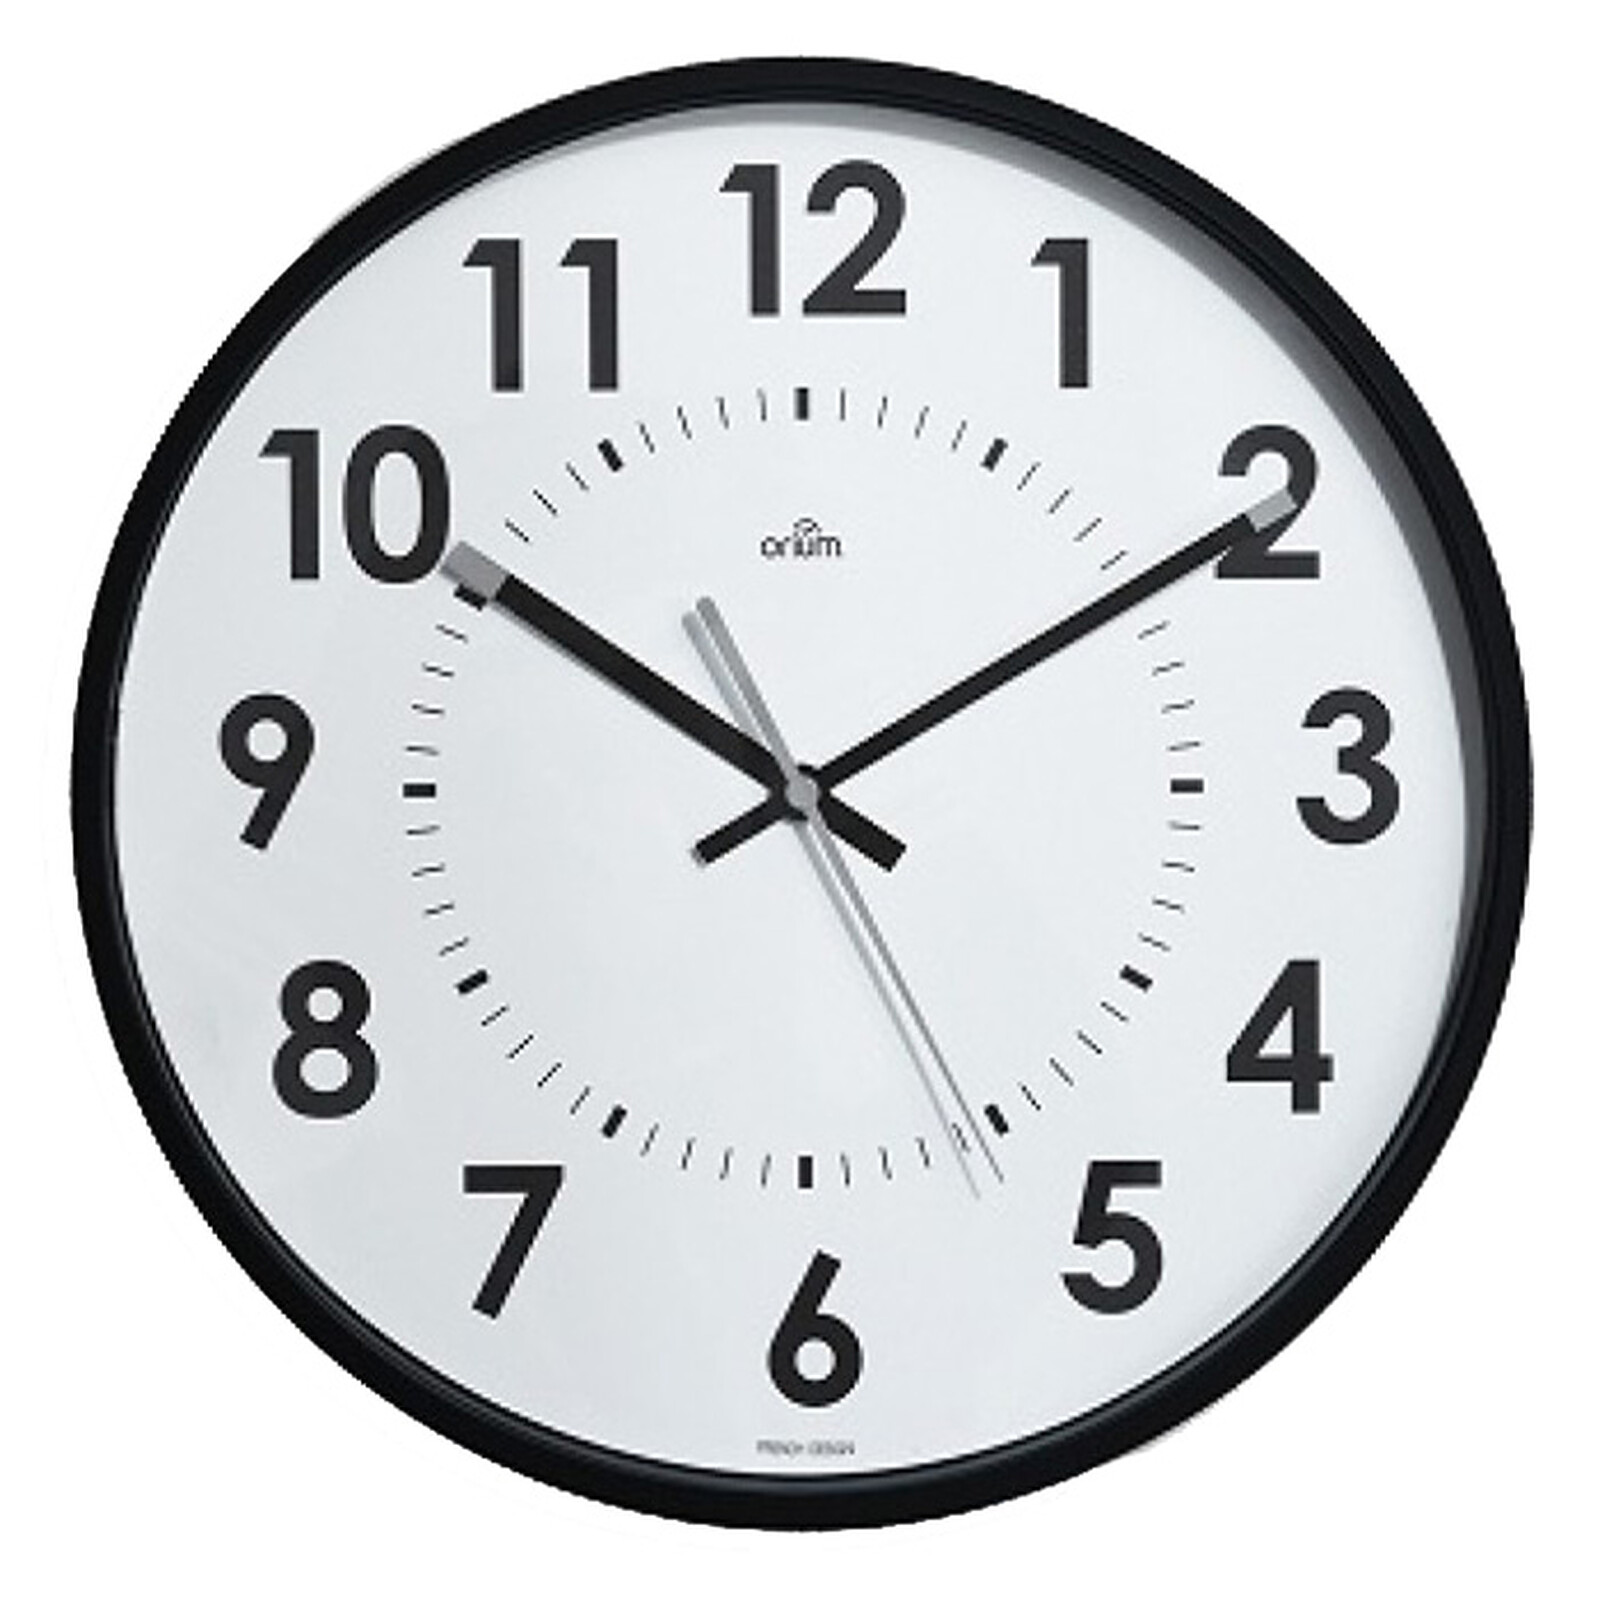 Orium Horloge Bureau Météo - Accessoires et ergonomie - Garantie 3 ans LDLC